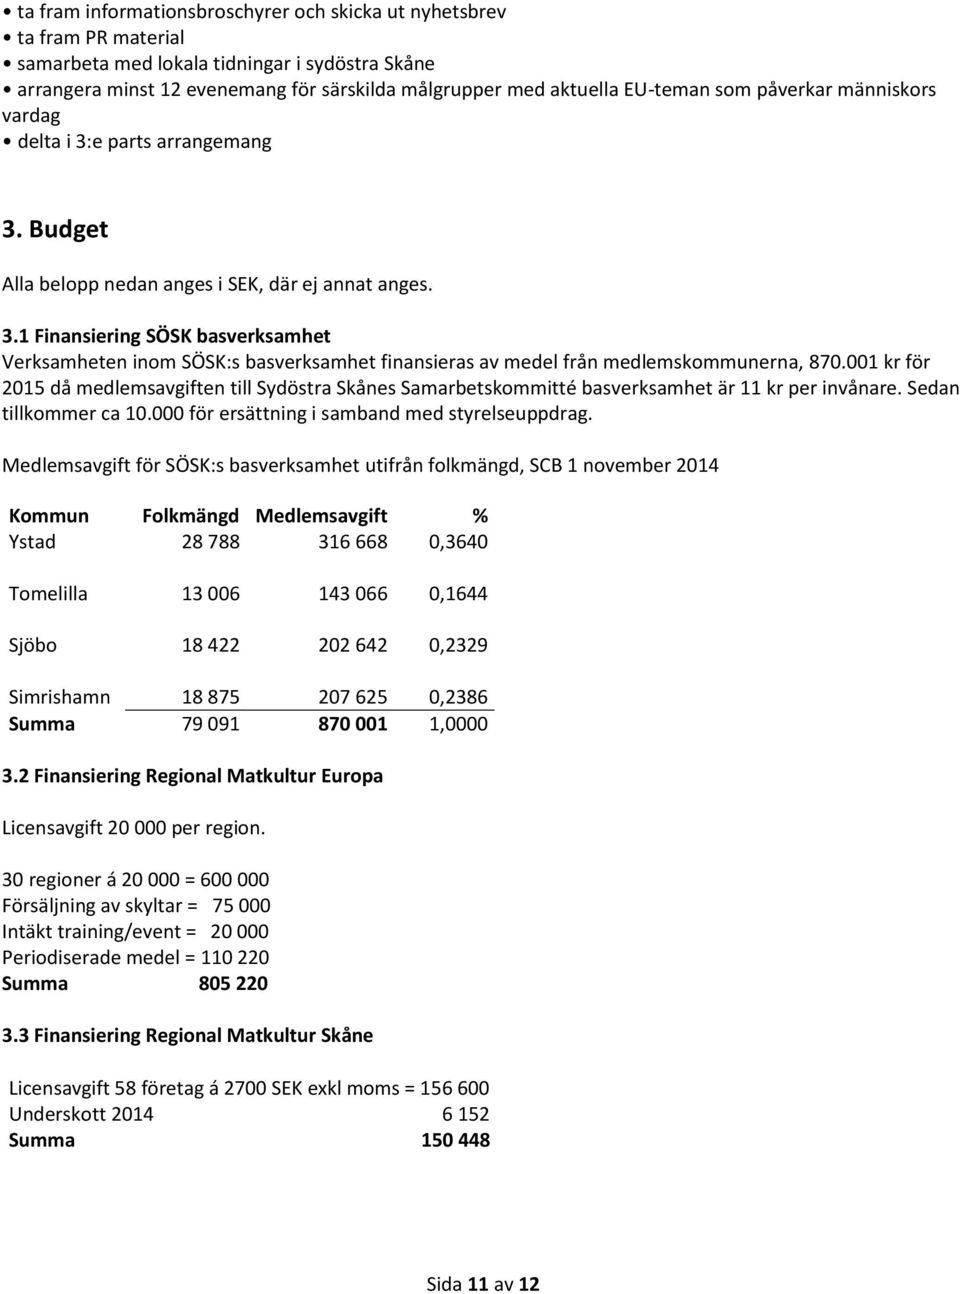 001 kr för 2015 då medlemsavgiften till Sydöstra Skånes Samarbetskommitté basverksamhet är 11 kr per invånare. Sedan tillkommer ca 10.000 för ersättning i samband med styrelseuppdrag.